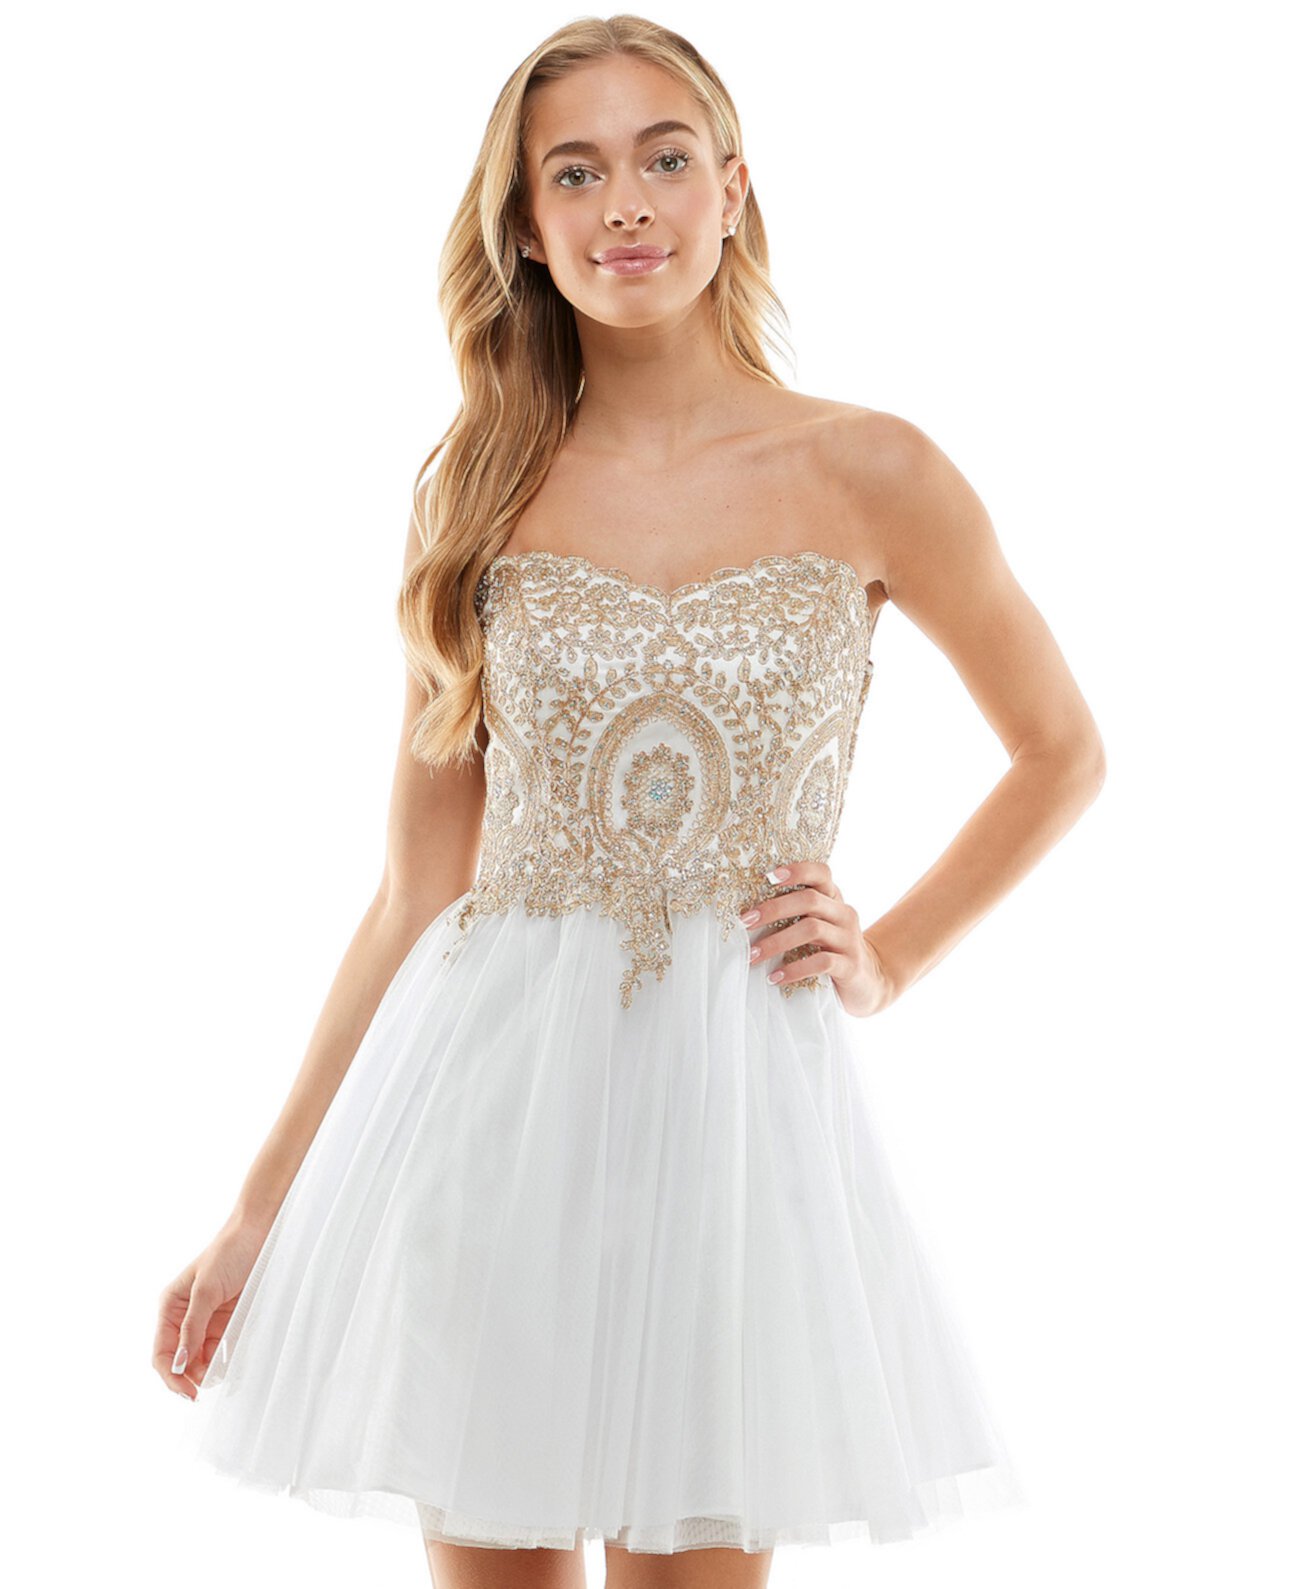 Украшенное корсетное платье для юниоров, созданное для Macy's Say Yes to the Prom